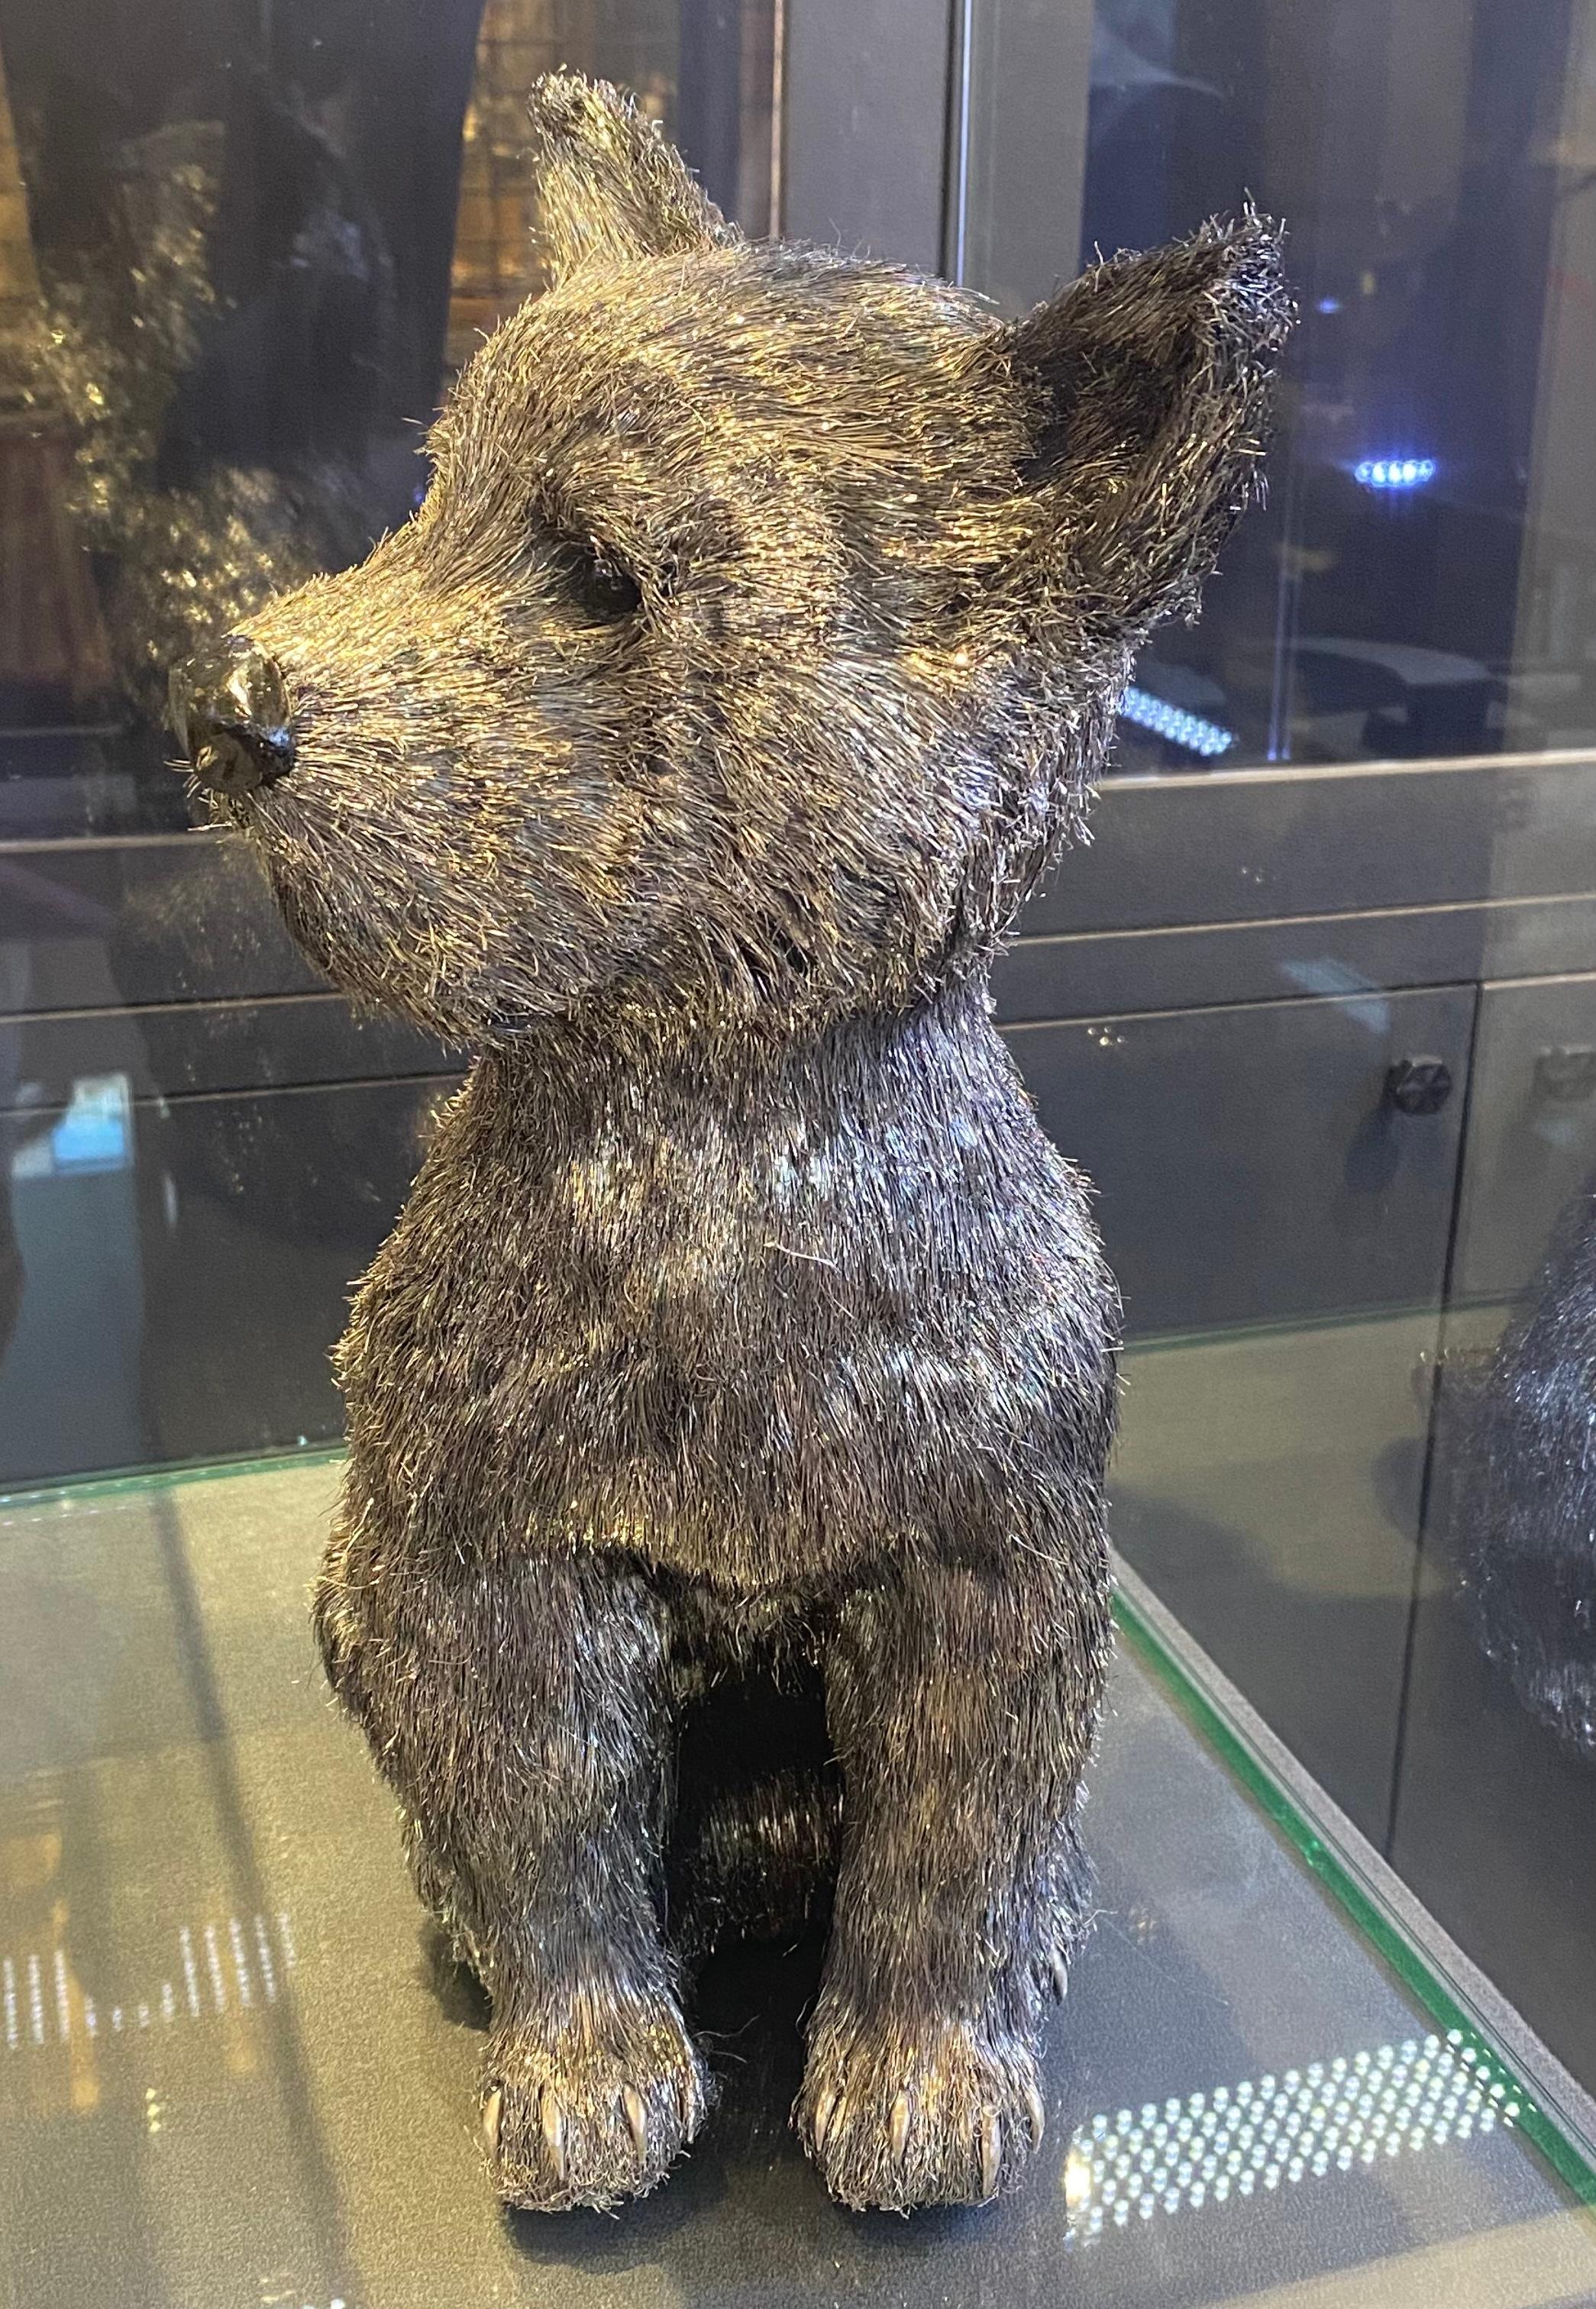 Mario Buccellati Lebensgröße Silber Yorkshirre Terrier Hund.
 Ein lebensgroßer Silberhund, der mit einer Technik gefertigt wurde, die als 